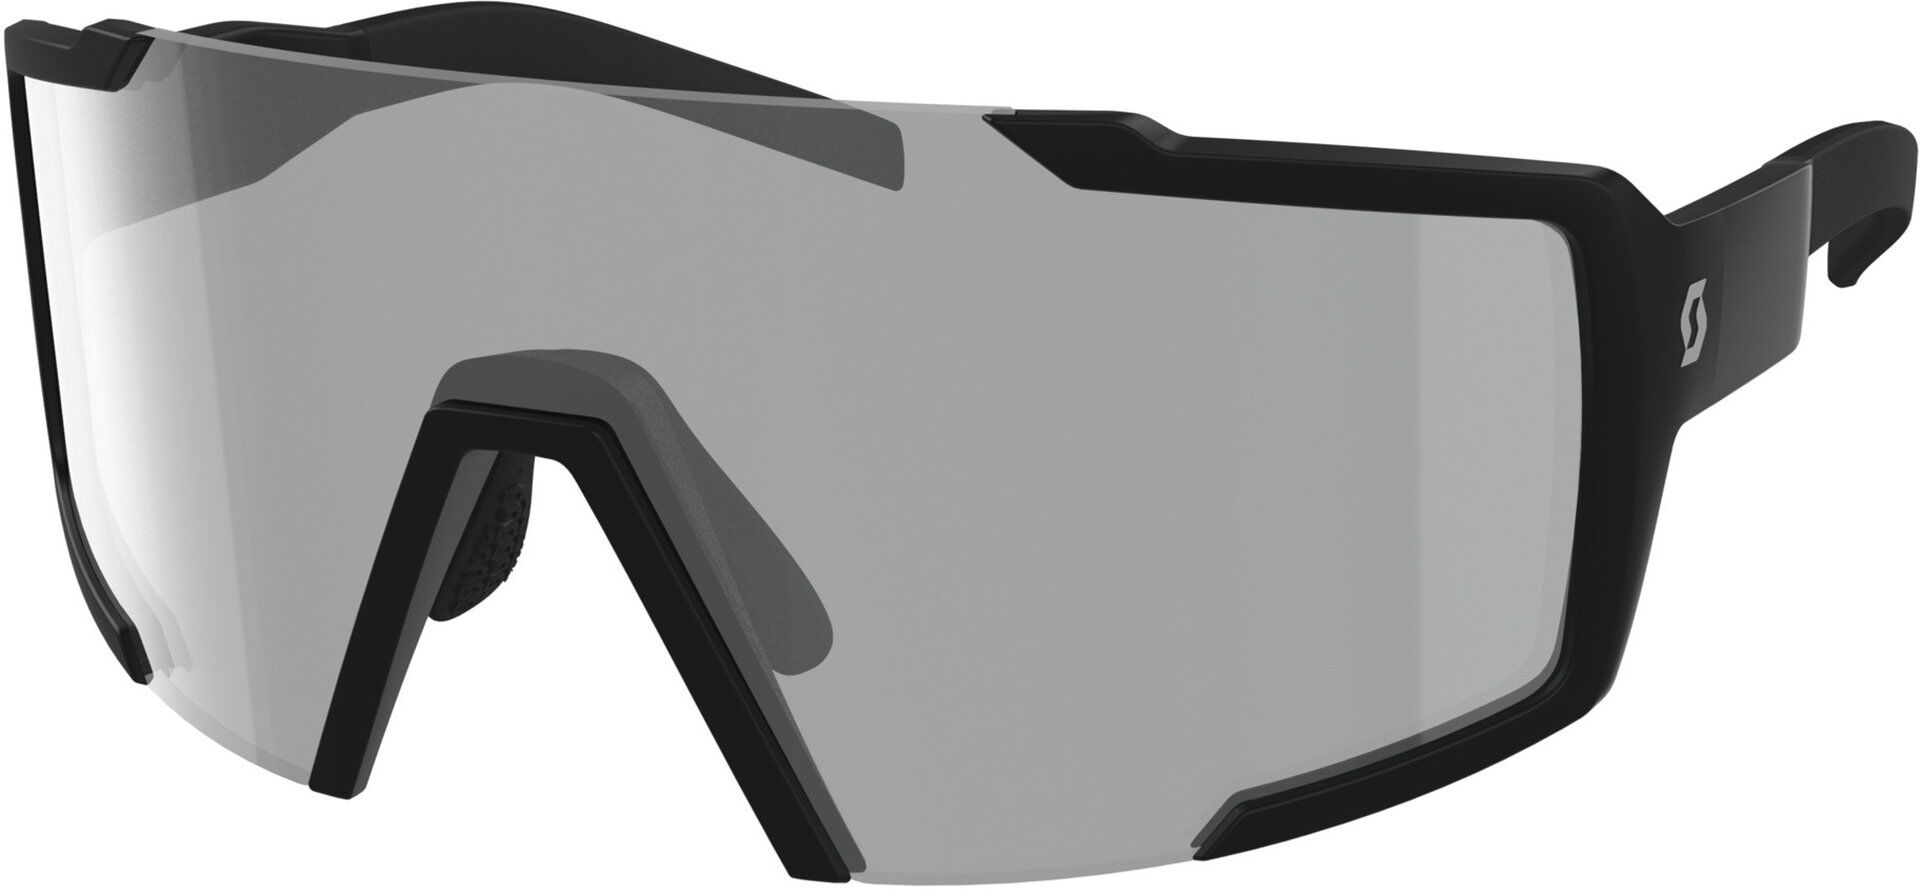 Scott Shield LS Gafas de sol - Negro Gris (un tamaño)